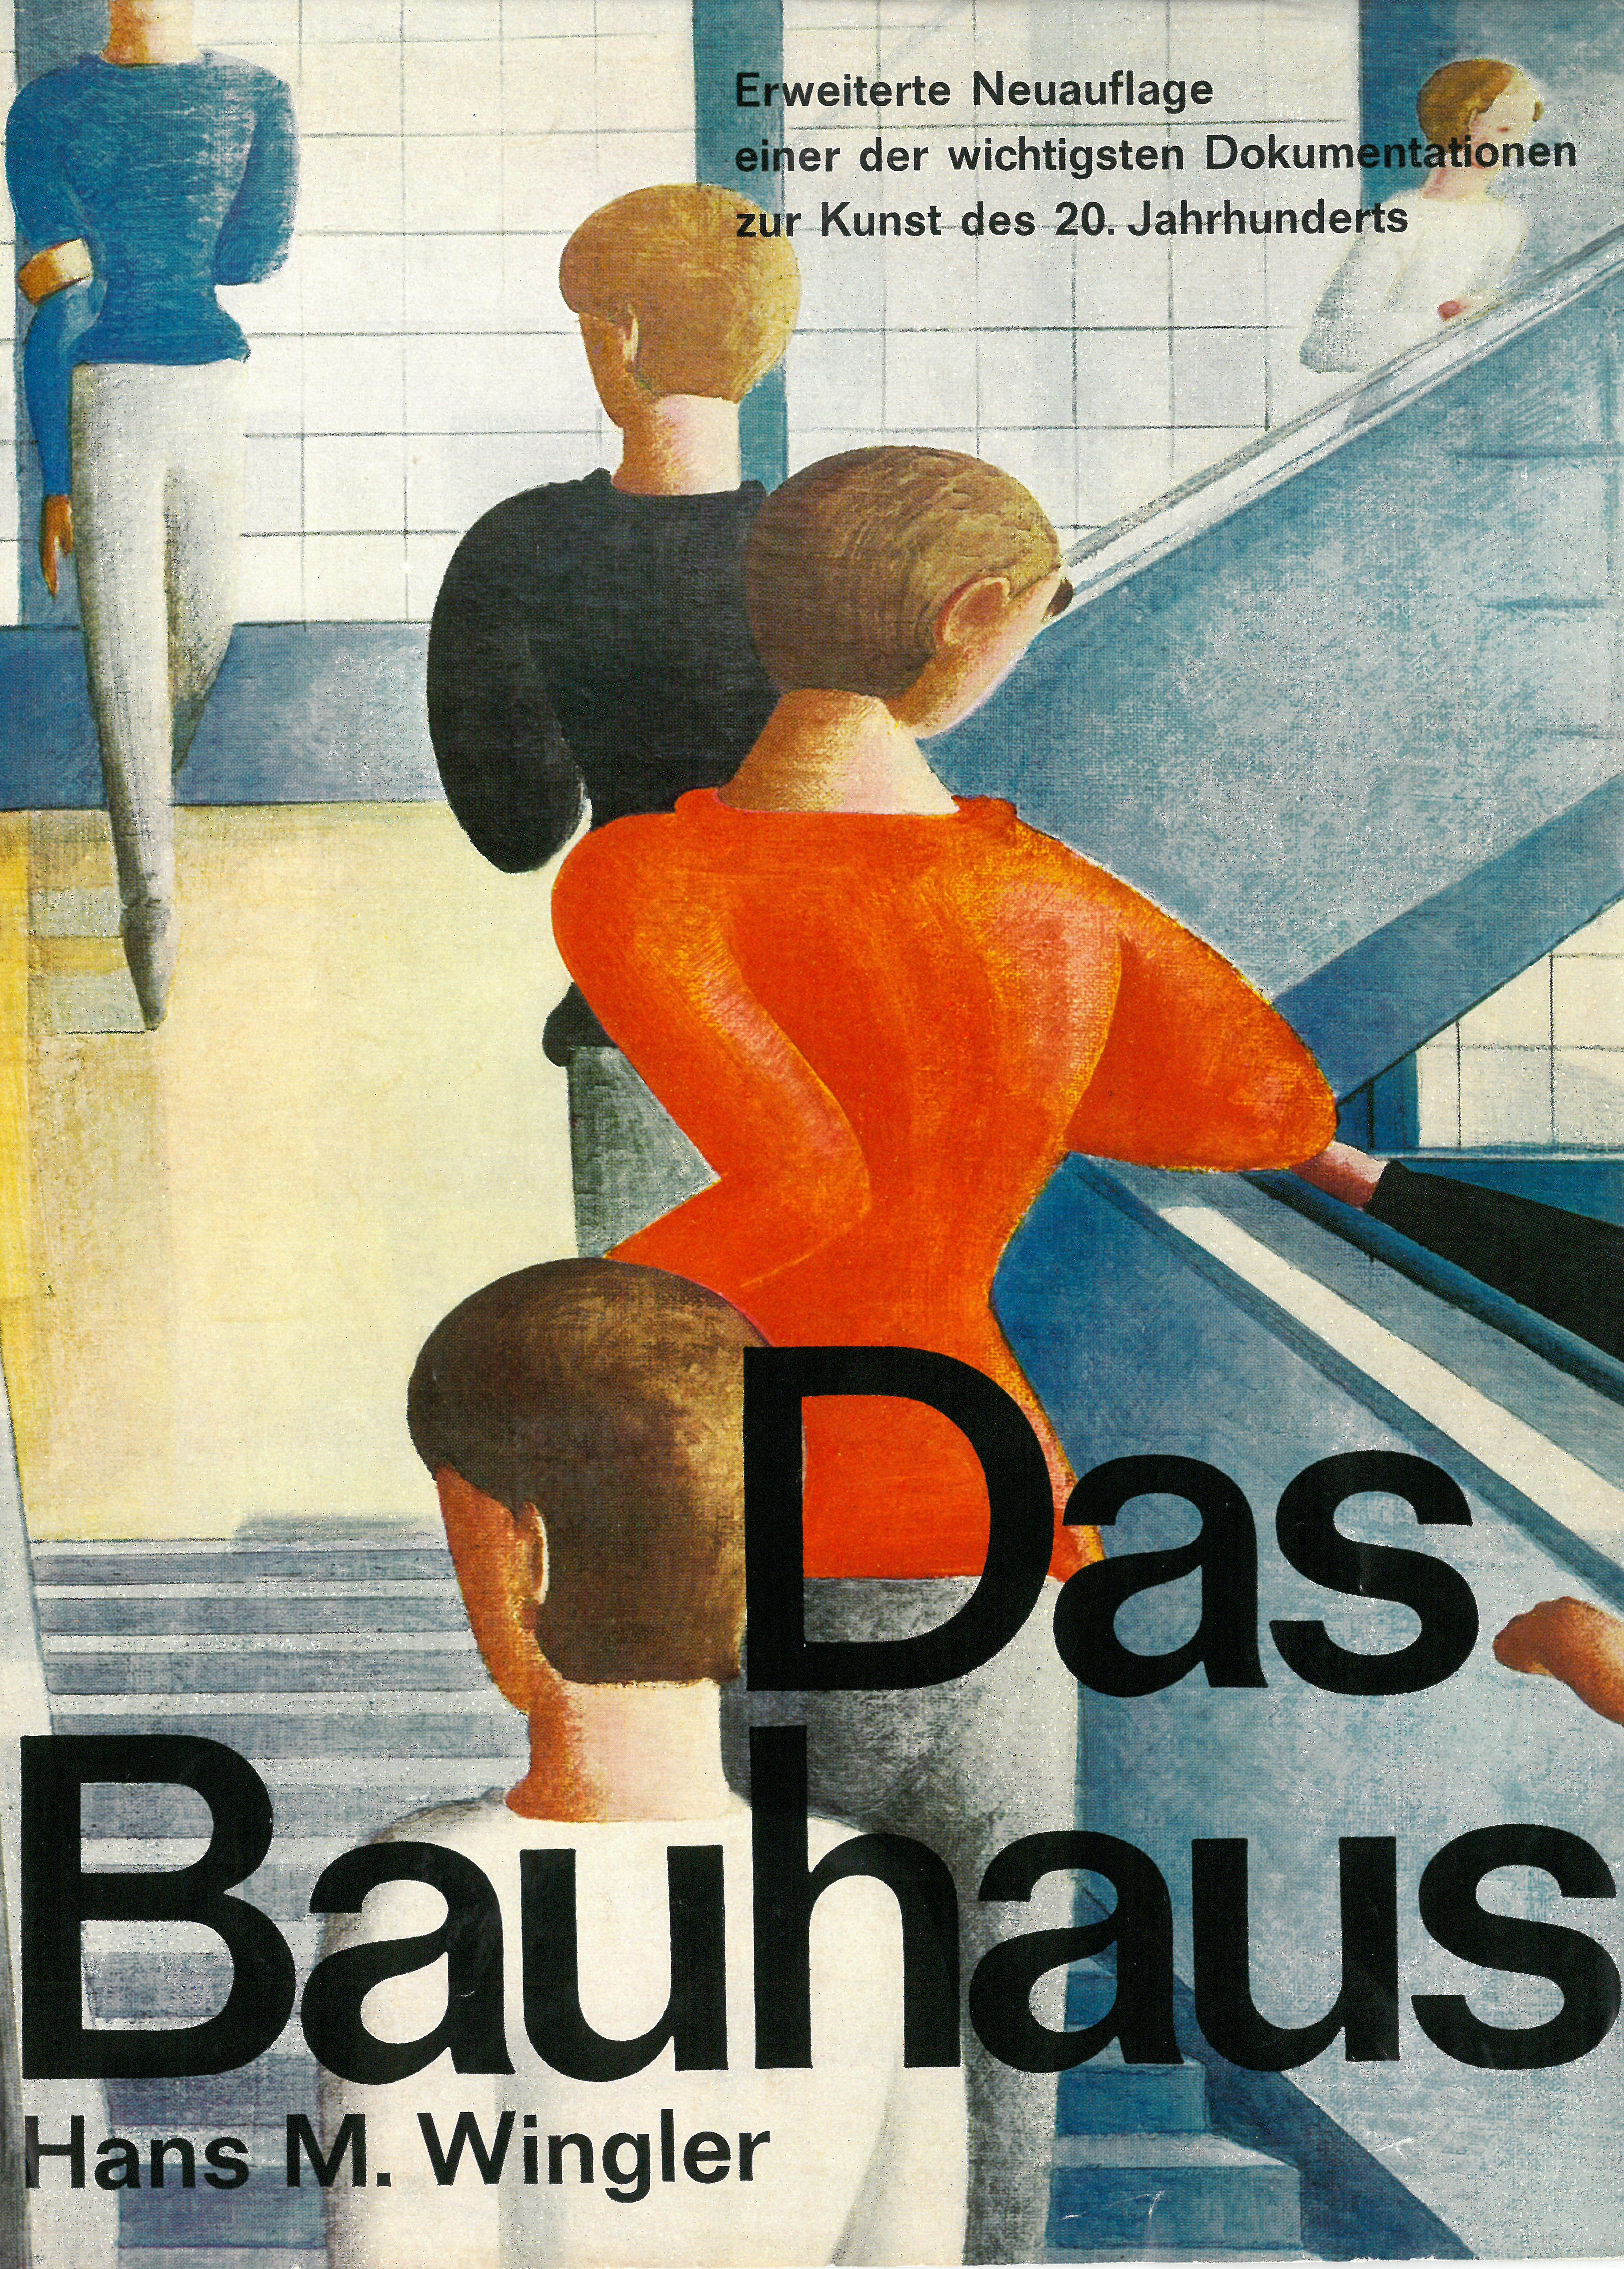 Couverture du livre: « Bauhaus » de Hans Maria Wingler 